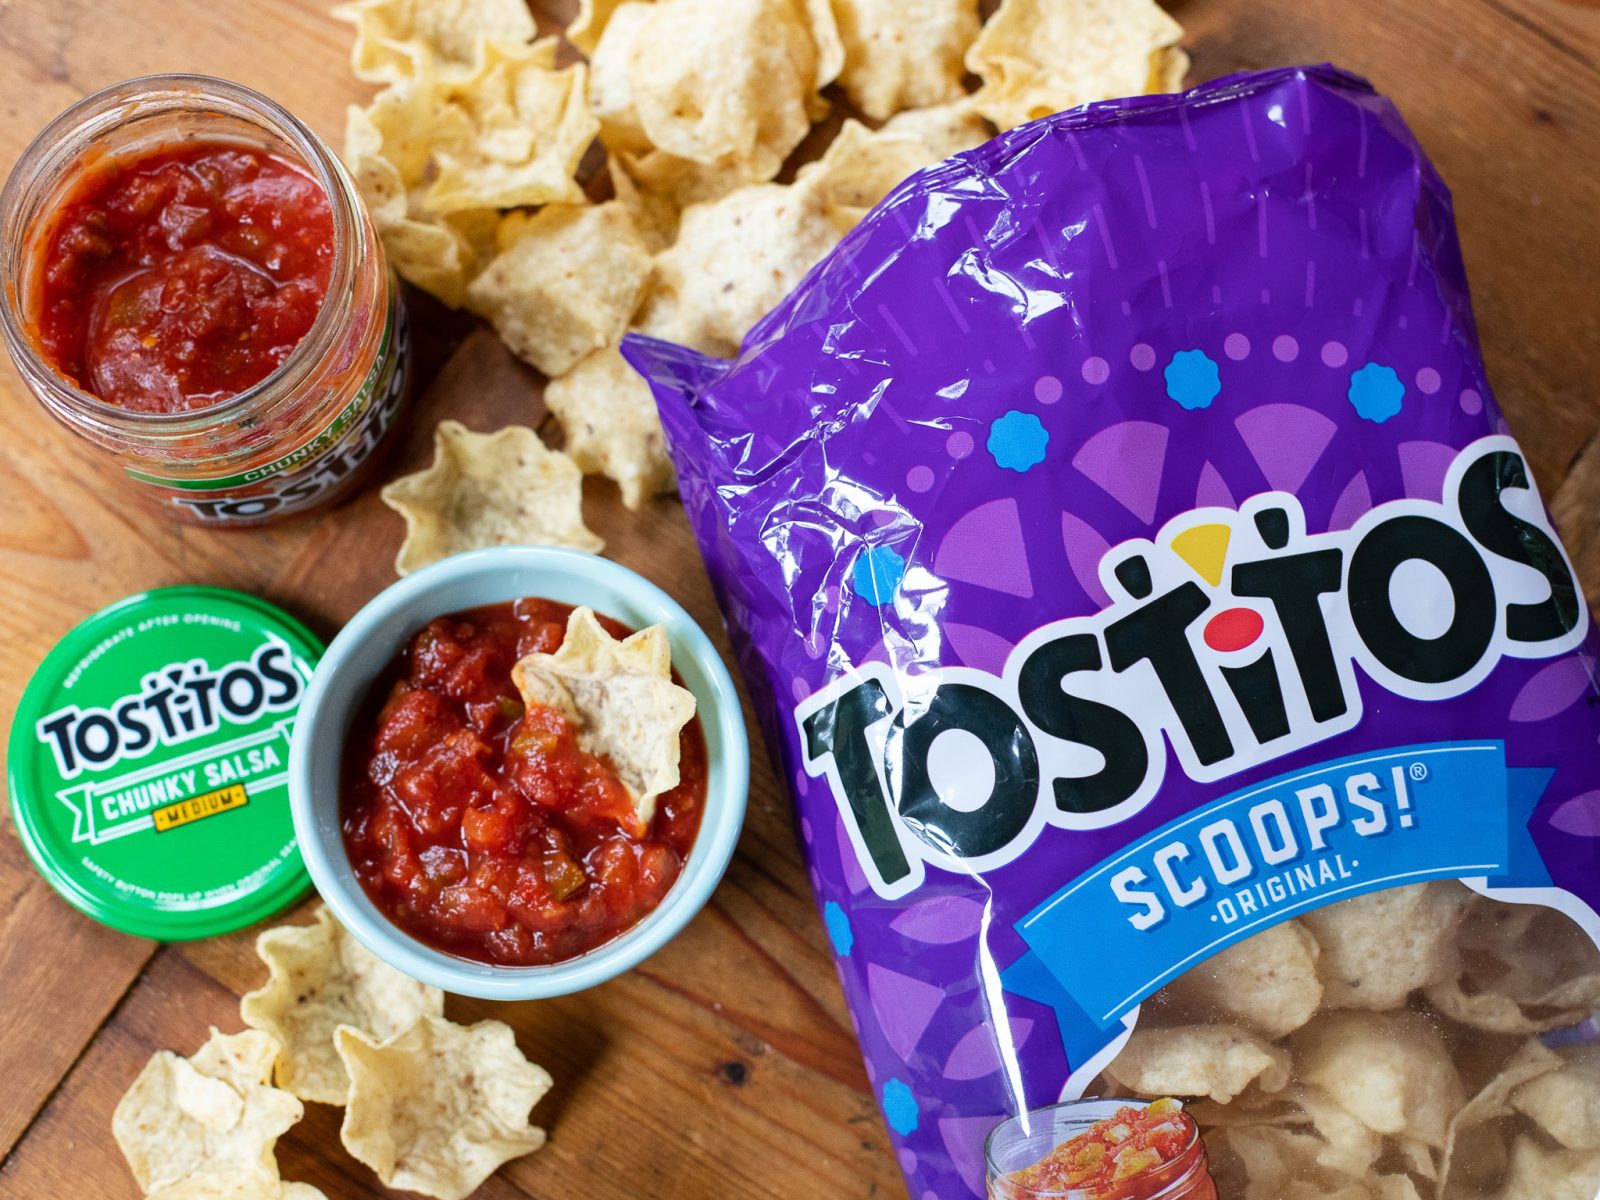 Grab Tostitos Chips & Tostitos Salsa For Just $1.89 Each At Kroger